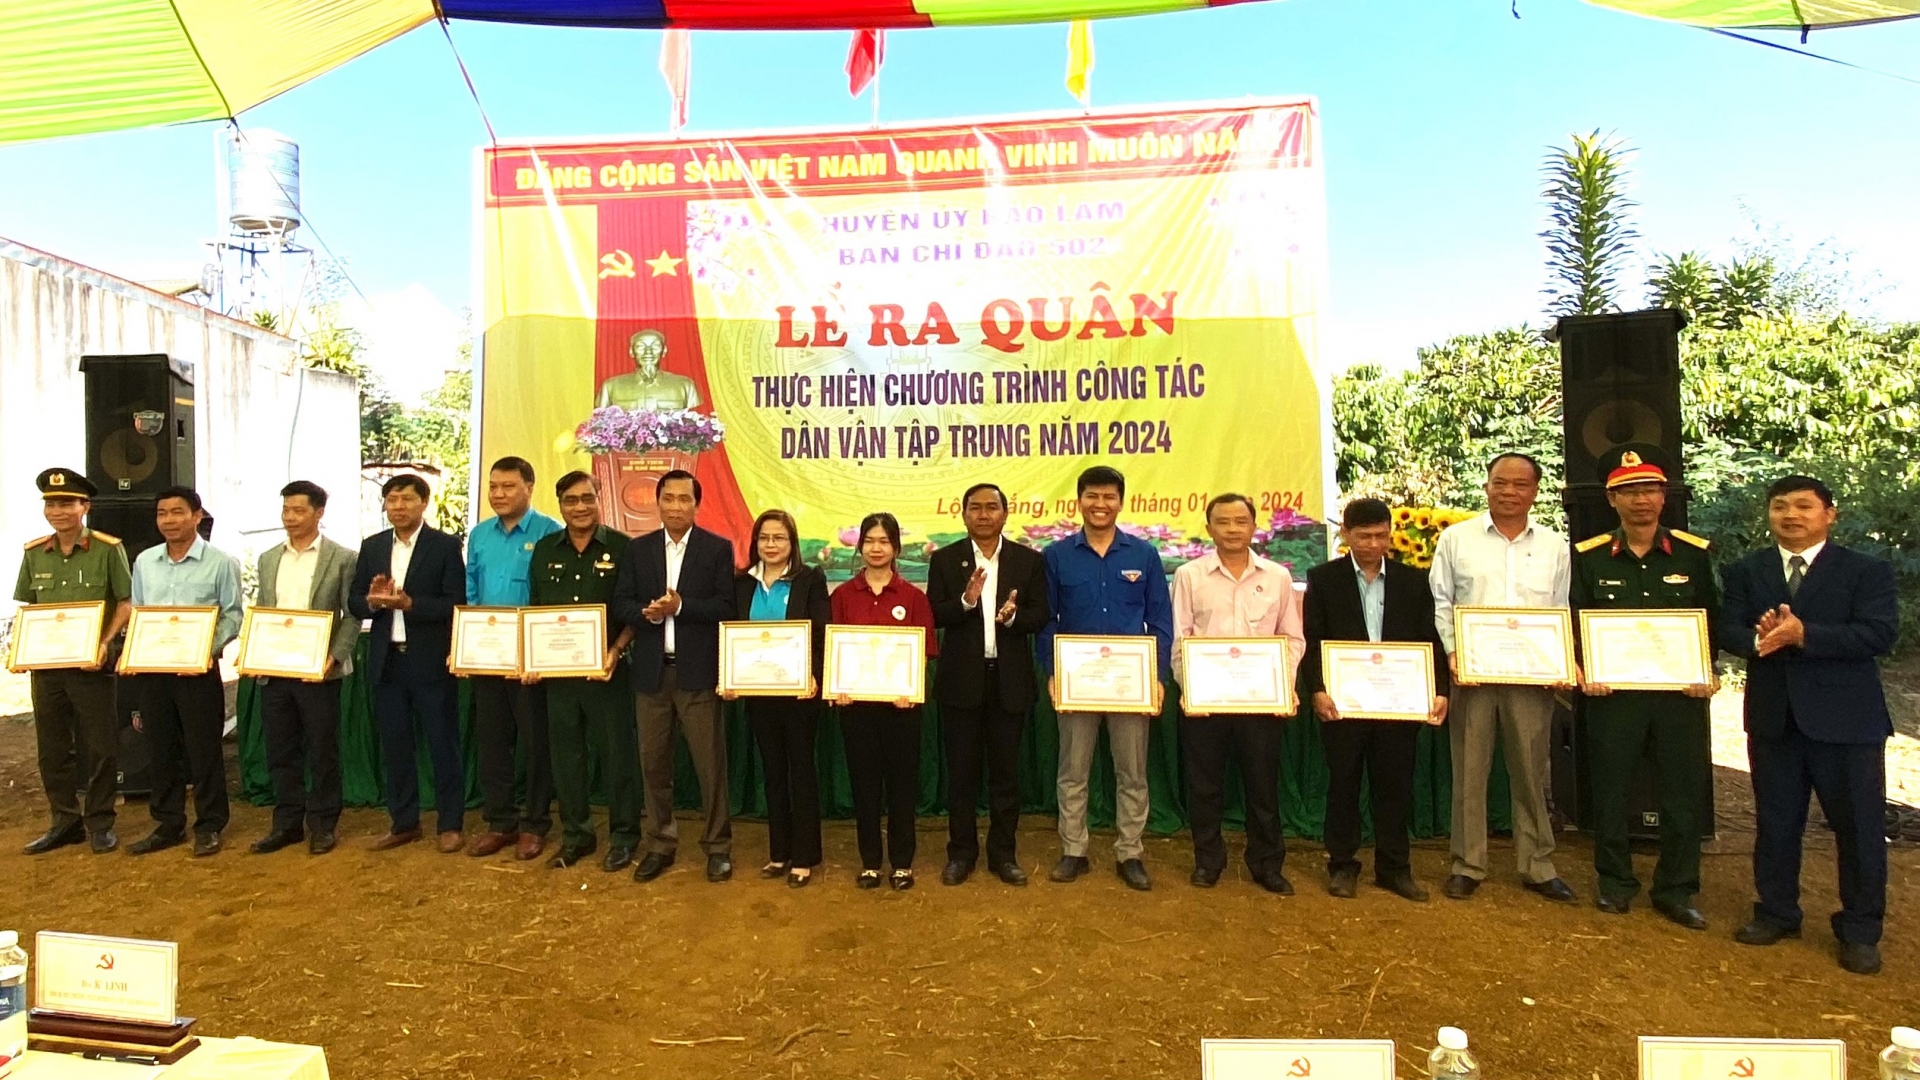 Huyện Bảo Lâm khen thưởng các tập thể, cá nhân có nhiều đóng góp cho đợt thực hiện công tác dân vận tập trung